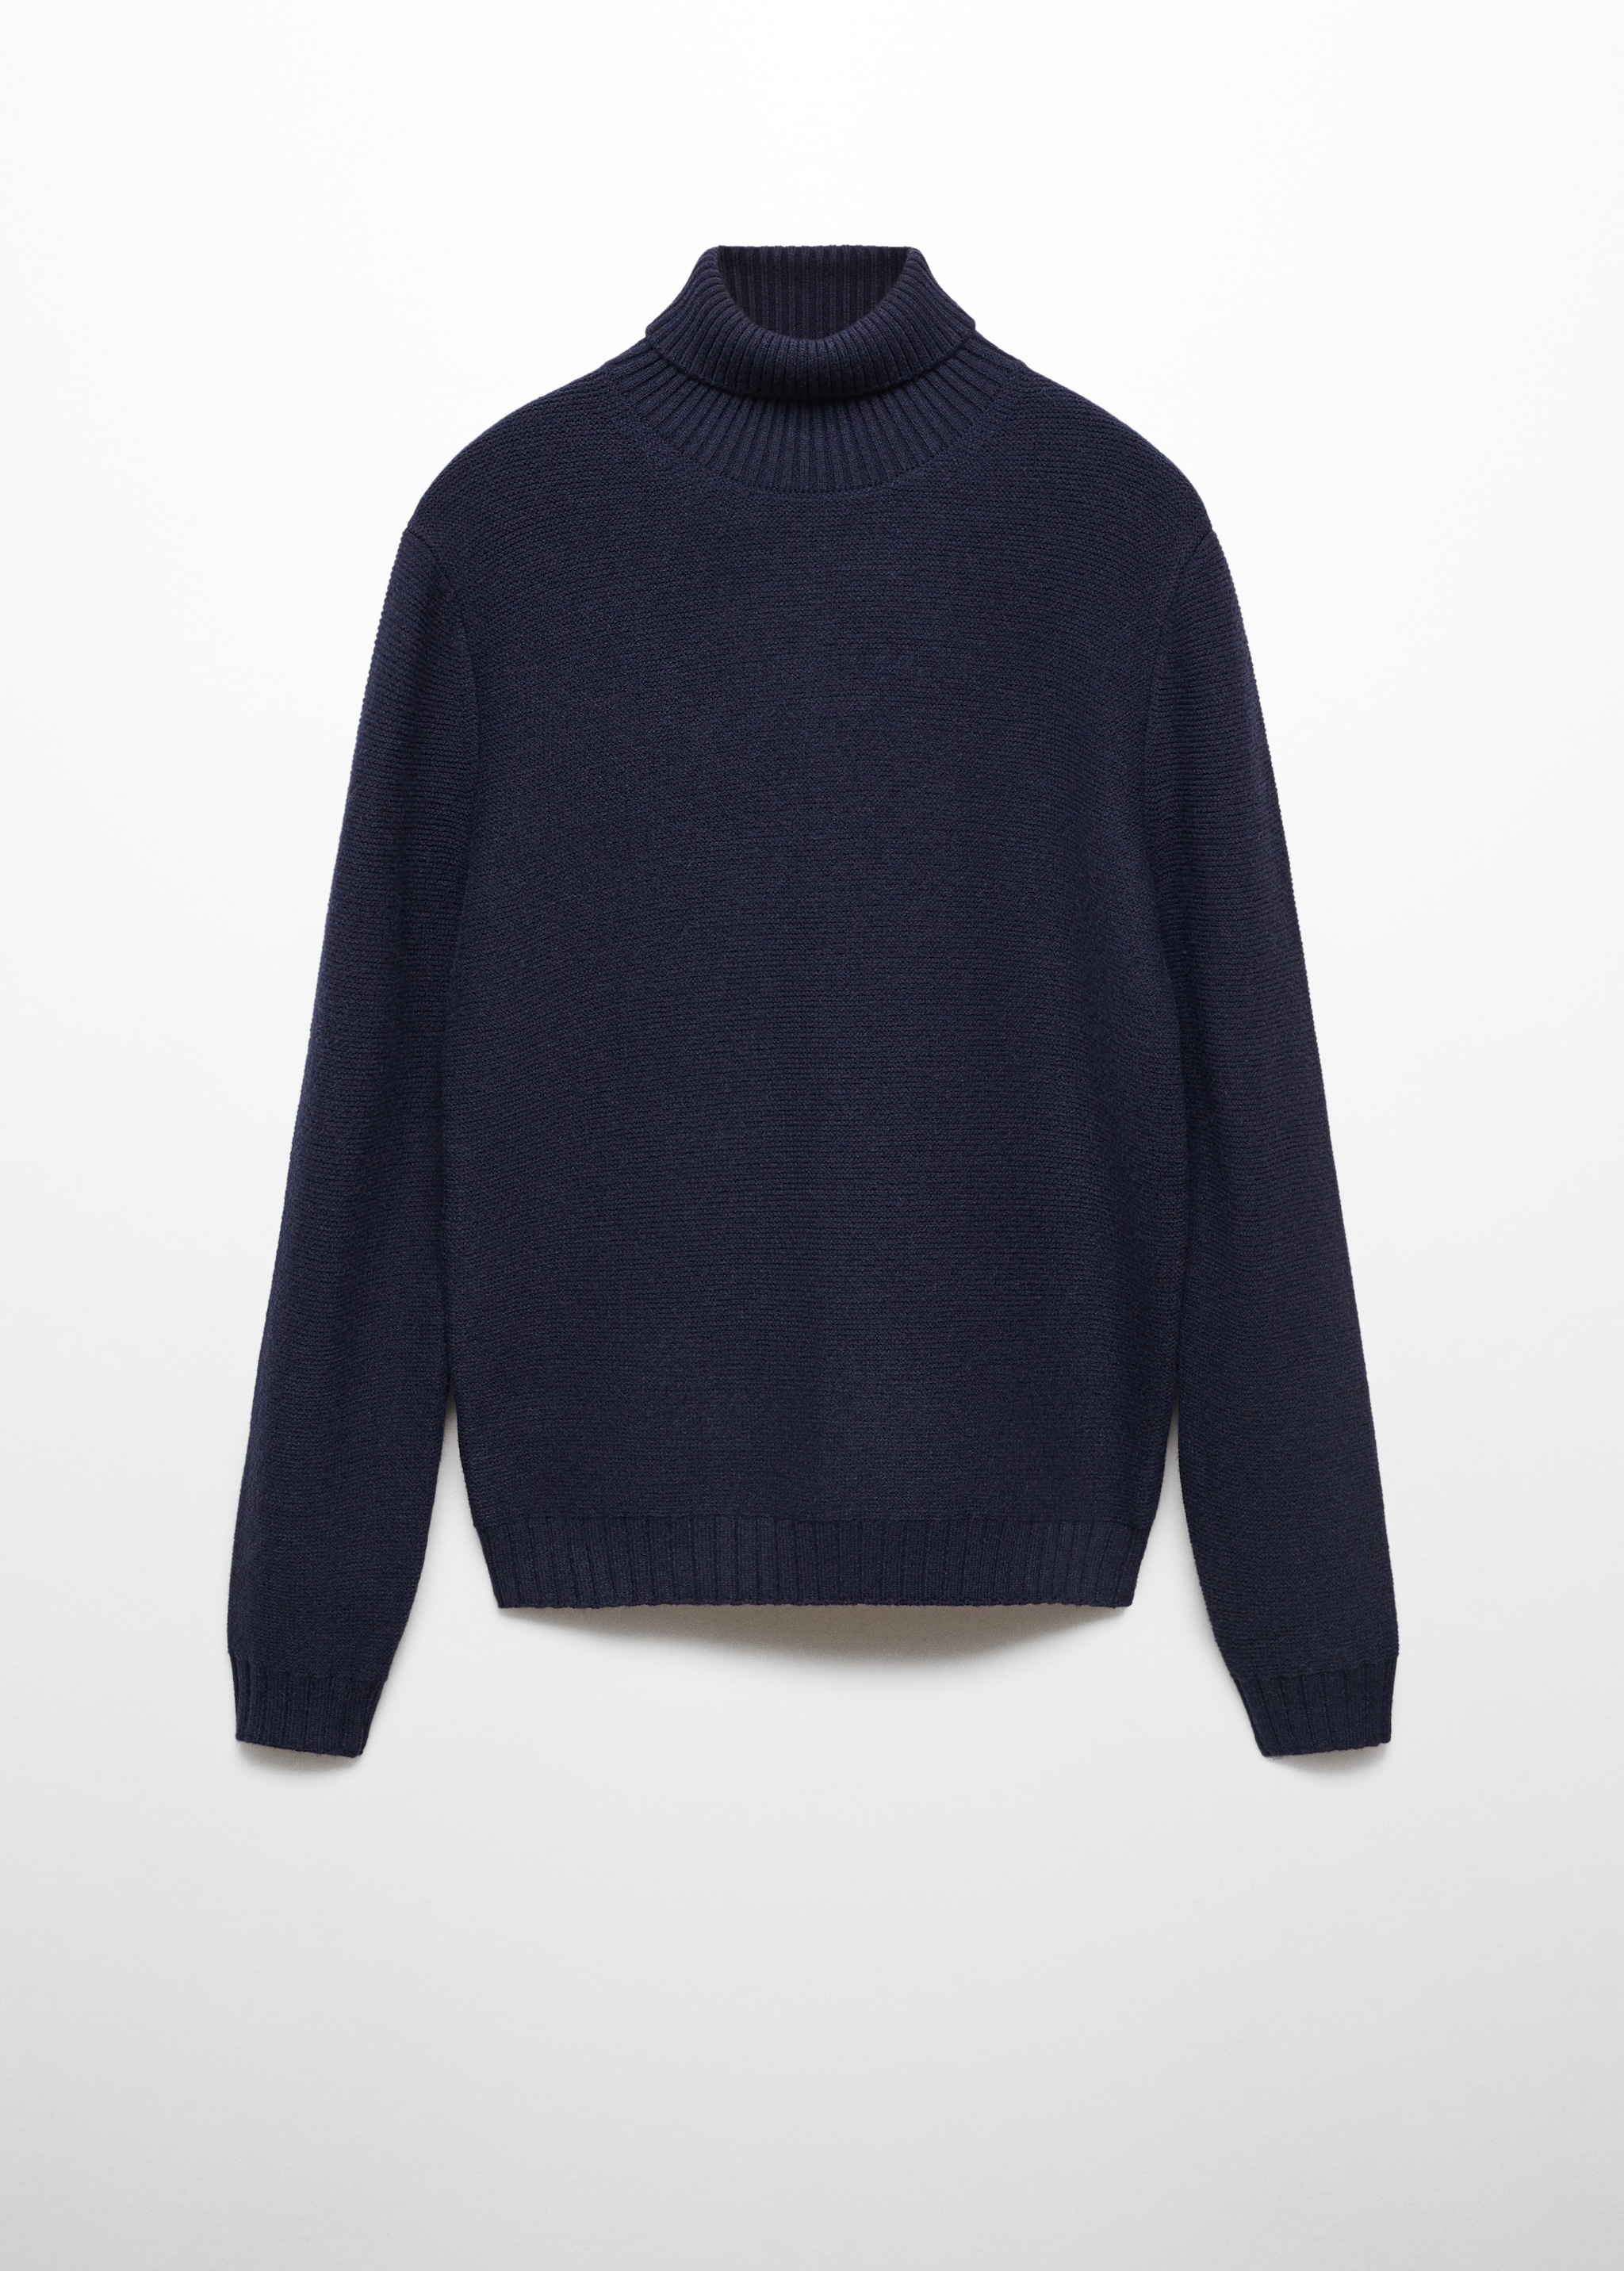 Вязаный свитер с высоким воротником - Изделие без модели